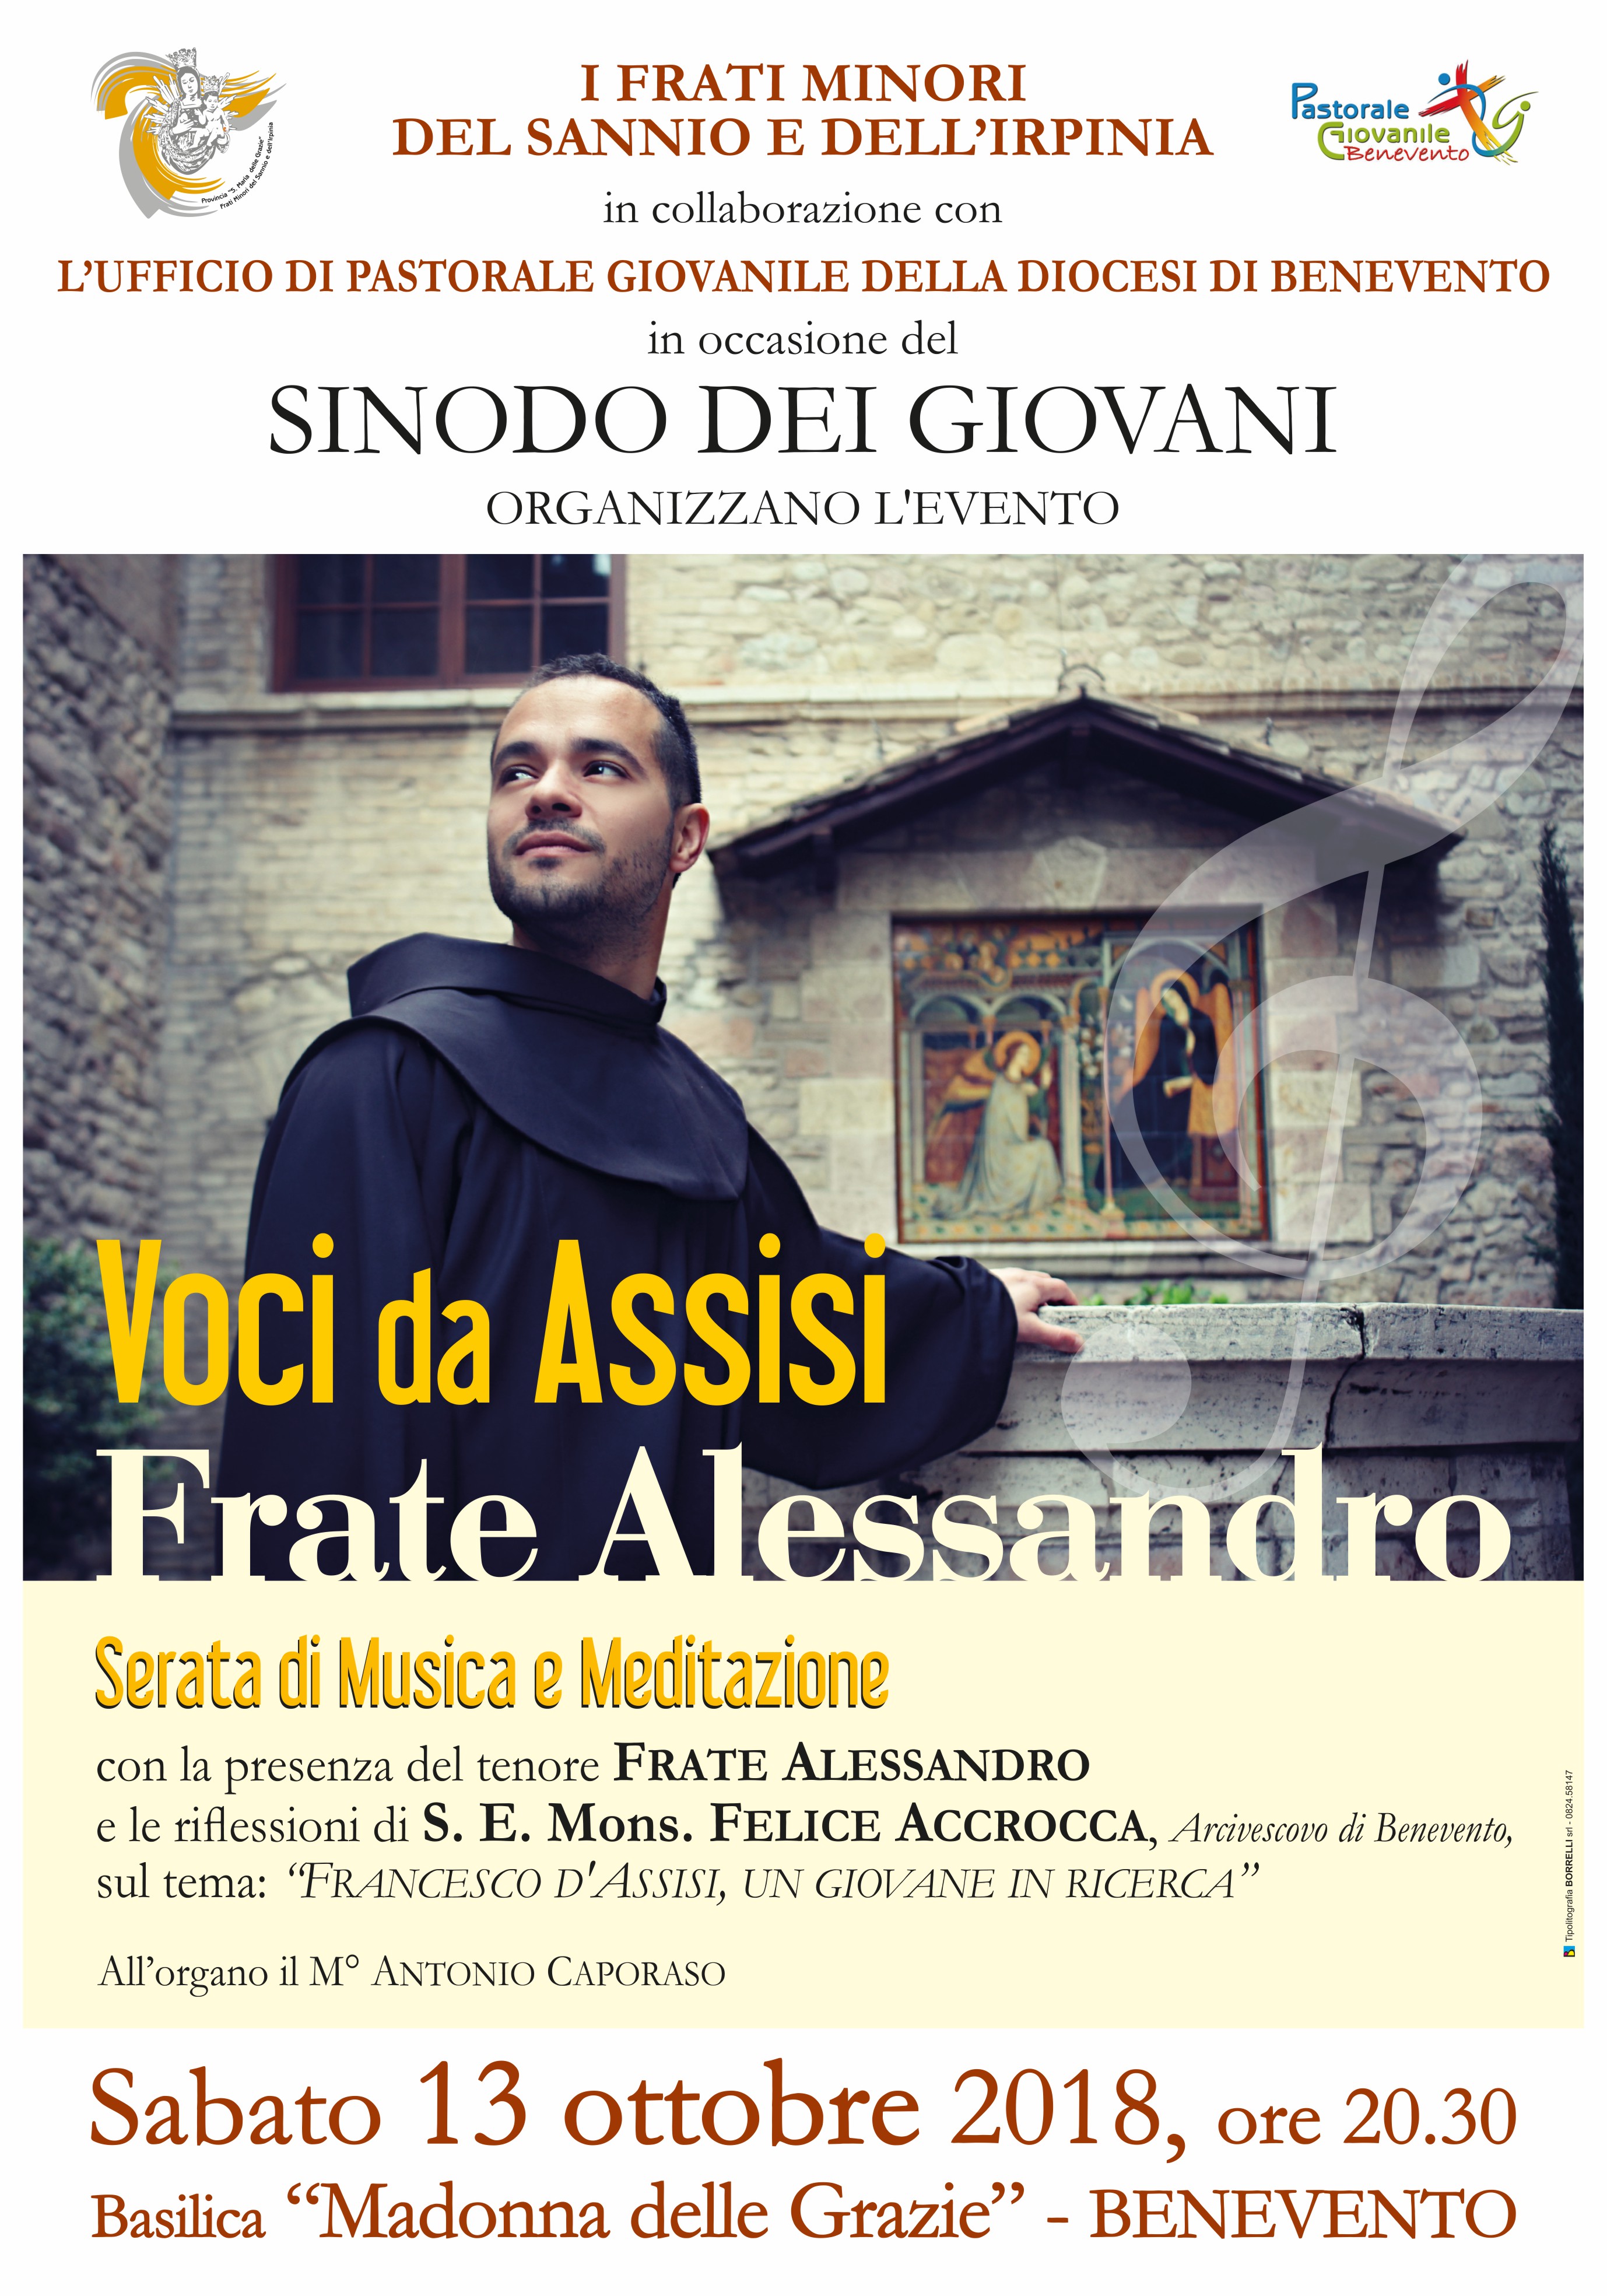 Benevento| Alla Madonna delle Grazie “Voci da Assisi”con fra Alessandro Brustenghi e Mons. Felice Accrocca